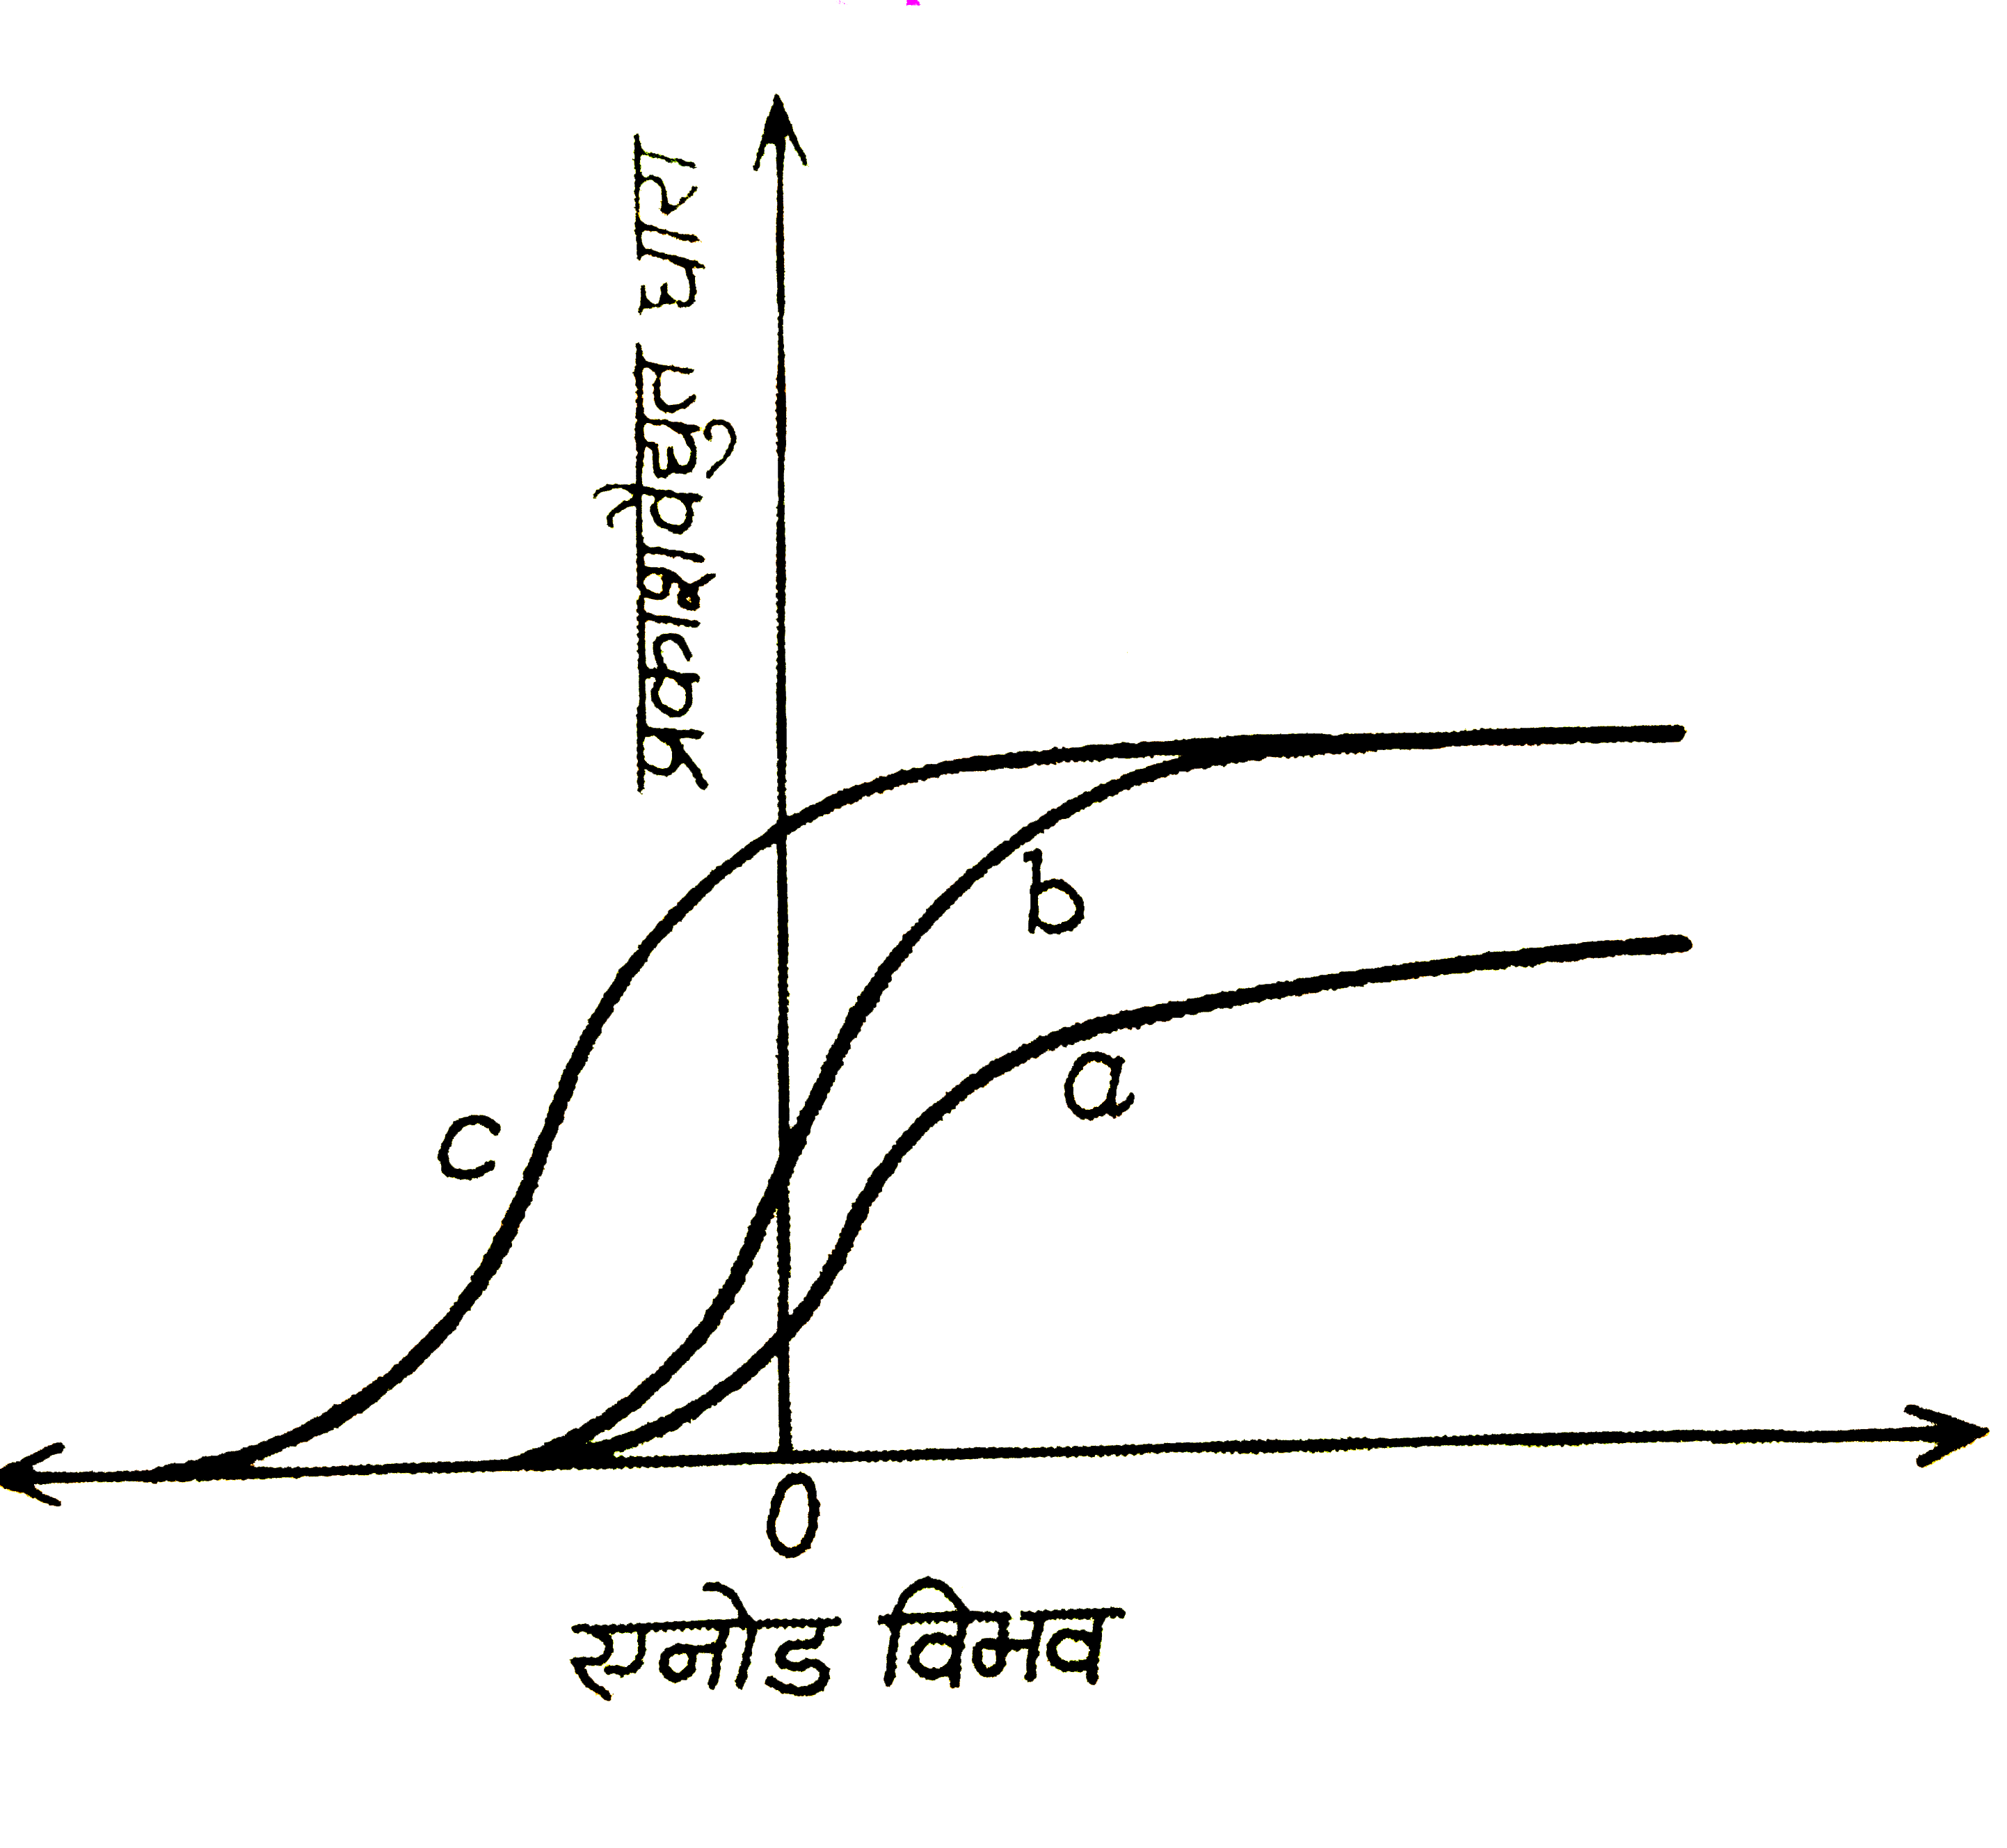 चित्र  में तीन  विभिन्न  आपतित  विकिरणों  के लिए, एक फोटो-सुग्राही  पृष्ठ  से प्राप्त  प्रकाशवैधुत धारा तथा  एनोड  विभव  के बीच  ग्राफ  दर्शाये  गये हैं । माना  कि वक्रों a, b, c   के  संगत ,  आपतित  विकिरणों  कि तीव्रताएँ  क्रमशः I(a), I(b) , I(c)  हैं  तथा  आवृत्तियाँ  क्रमशःf(a), f(b) , f(c)   हैं । निम्नलिखित  में कौन-सा  कथन  सत्य  है ?